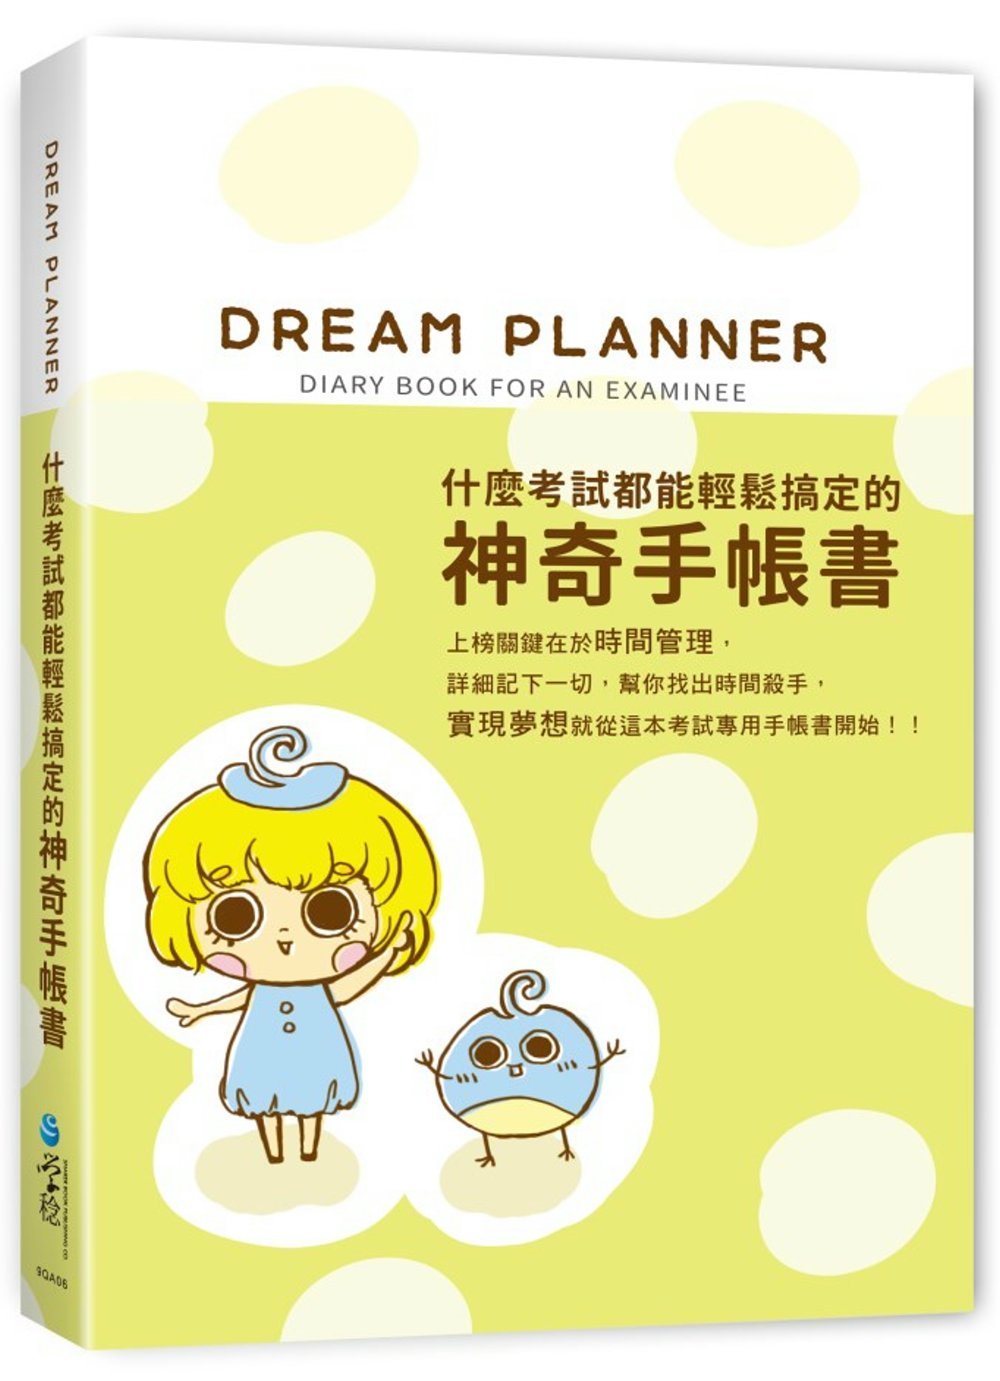 Dream Planner 什麼考試都能輕鬆搞定的神奇手帳書(綠版)